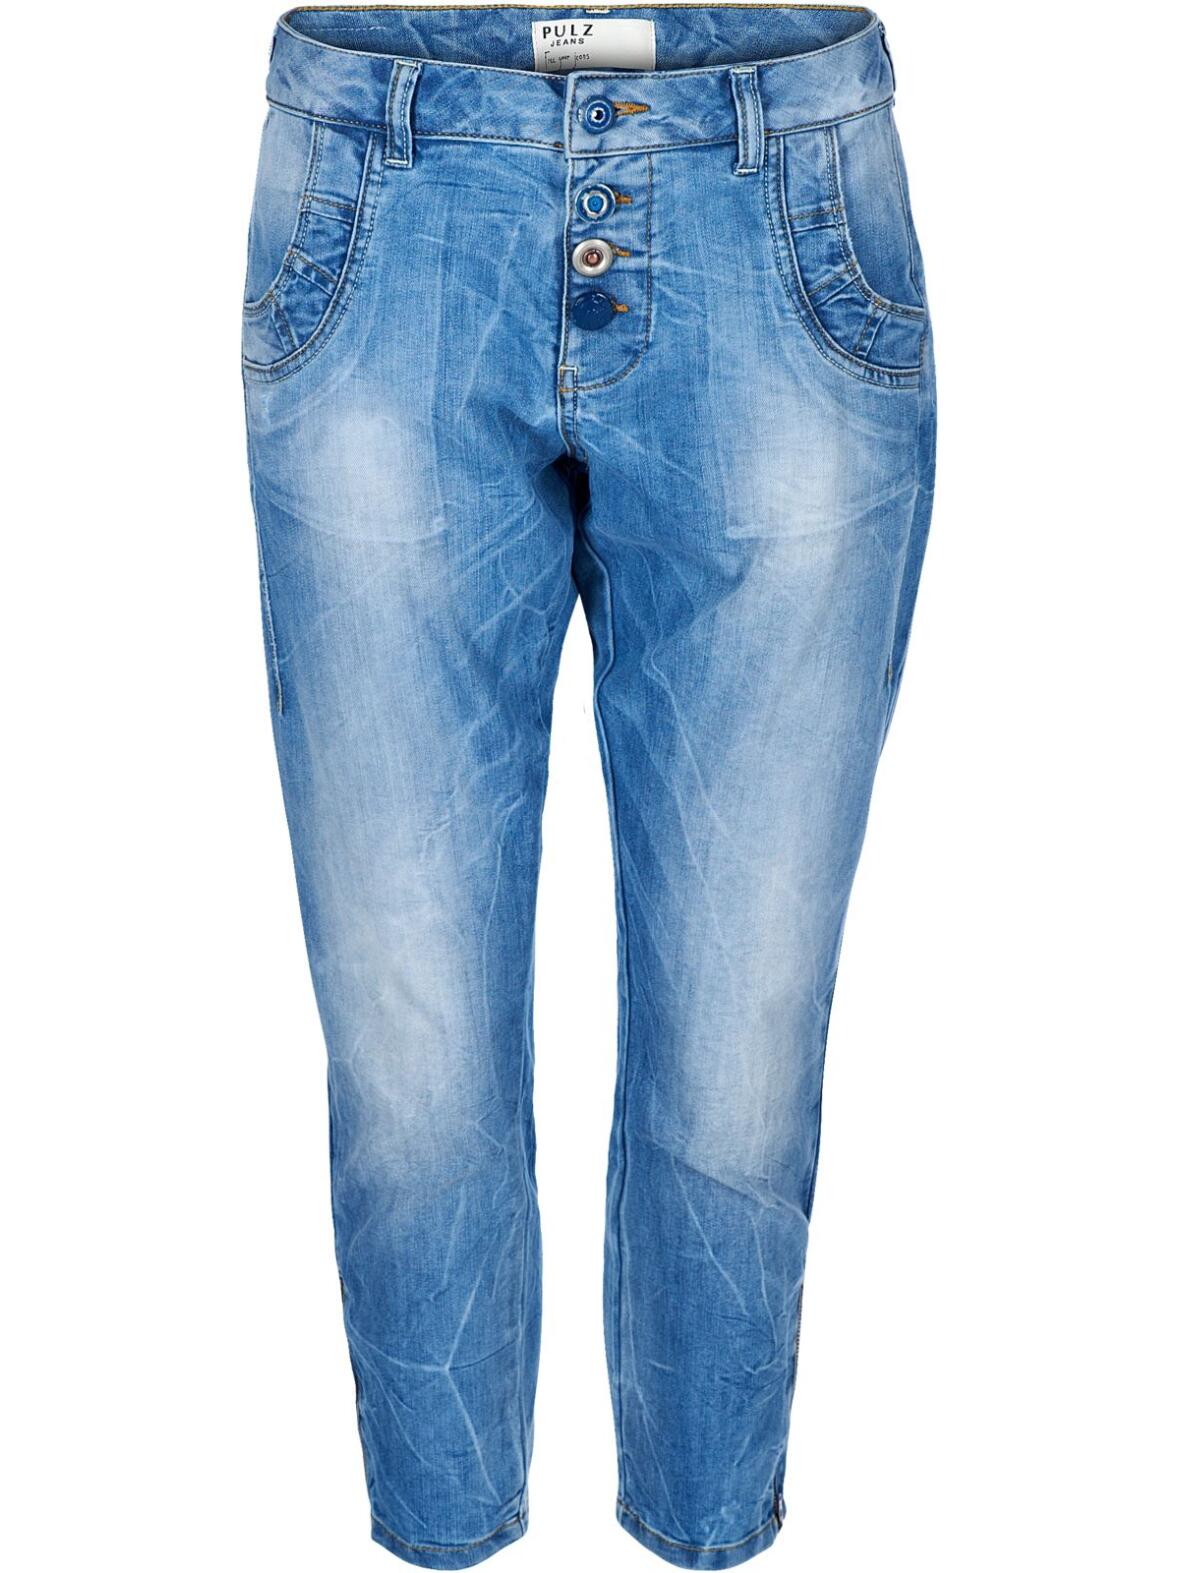 Boutique Dorthe - Malvina jeans